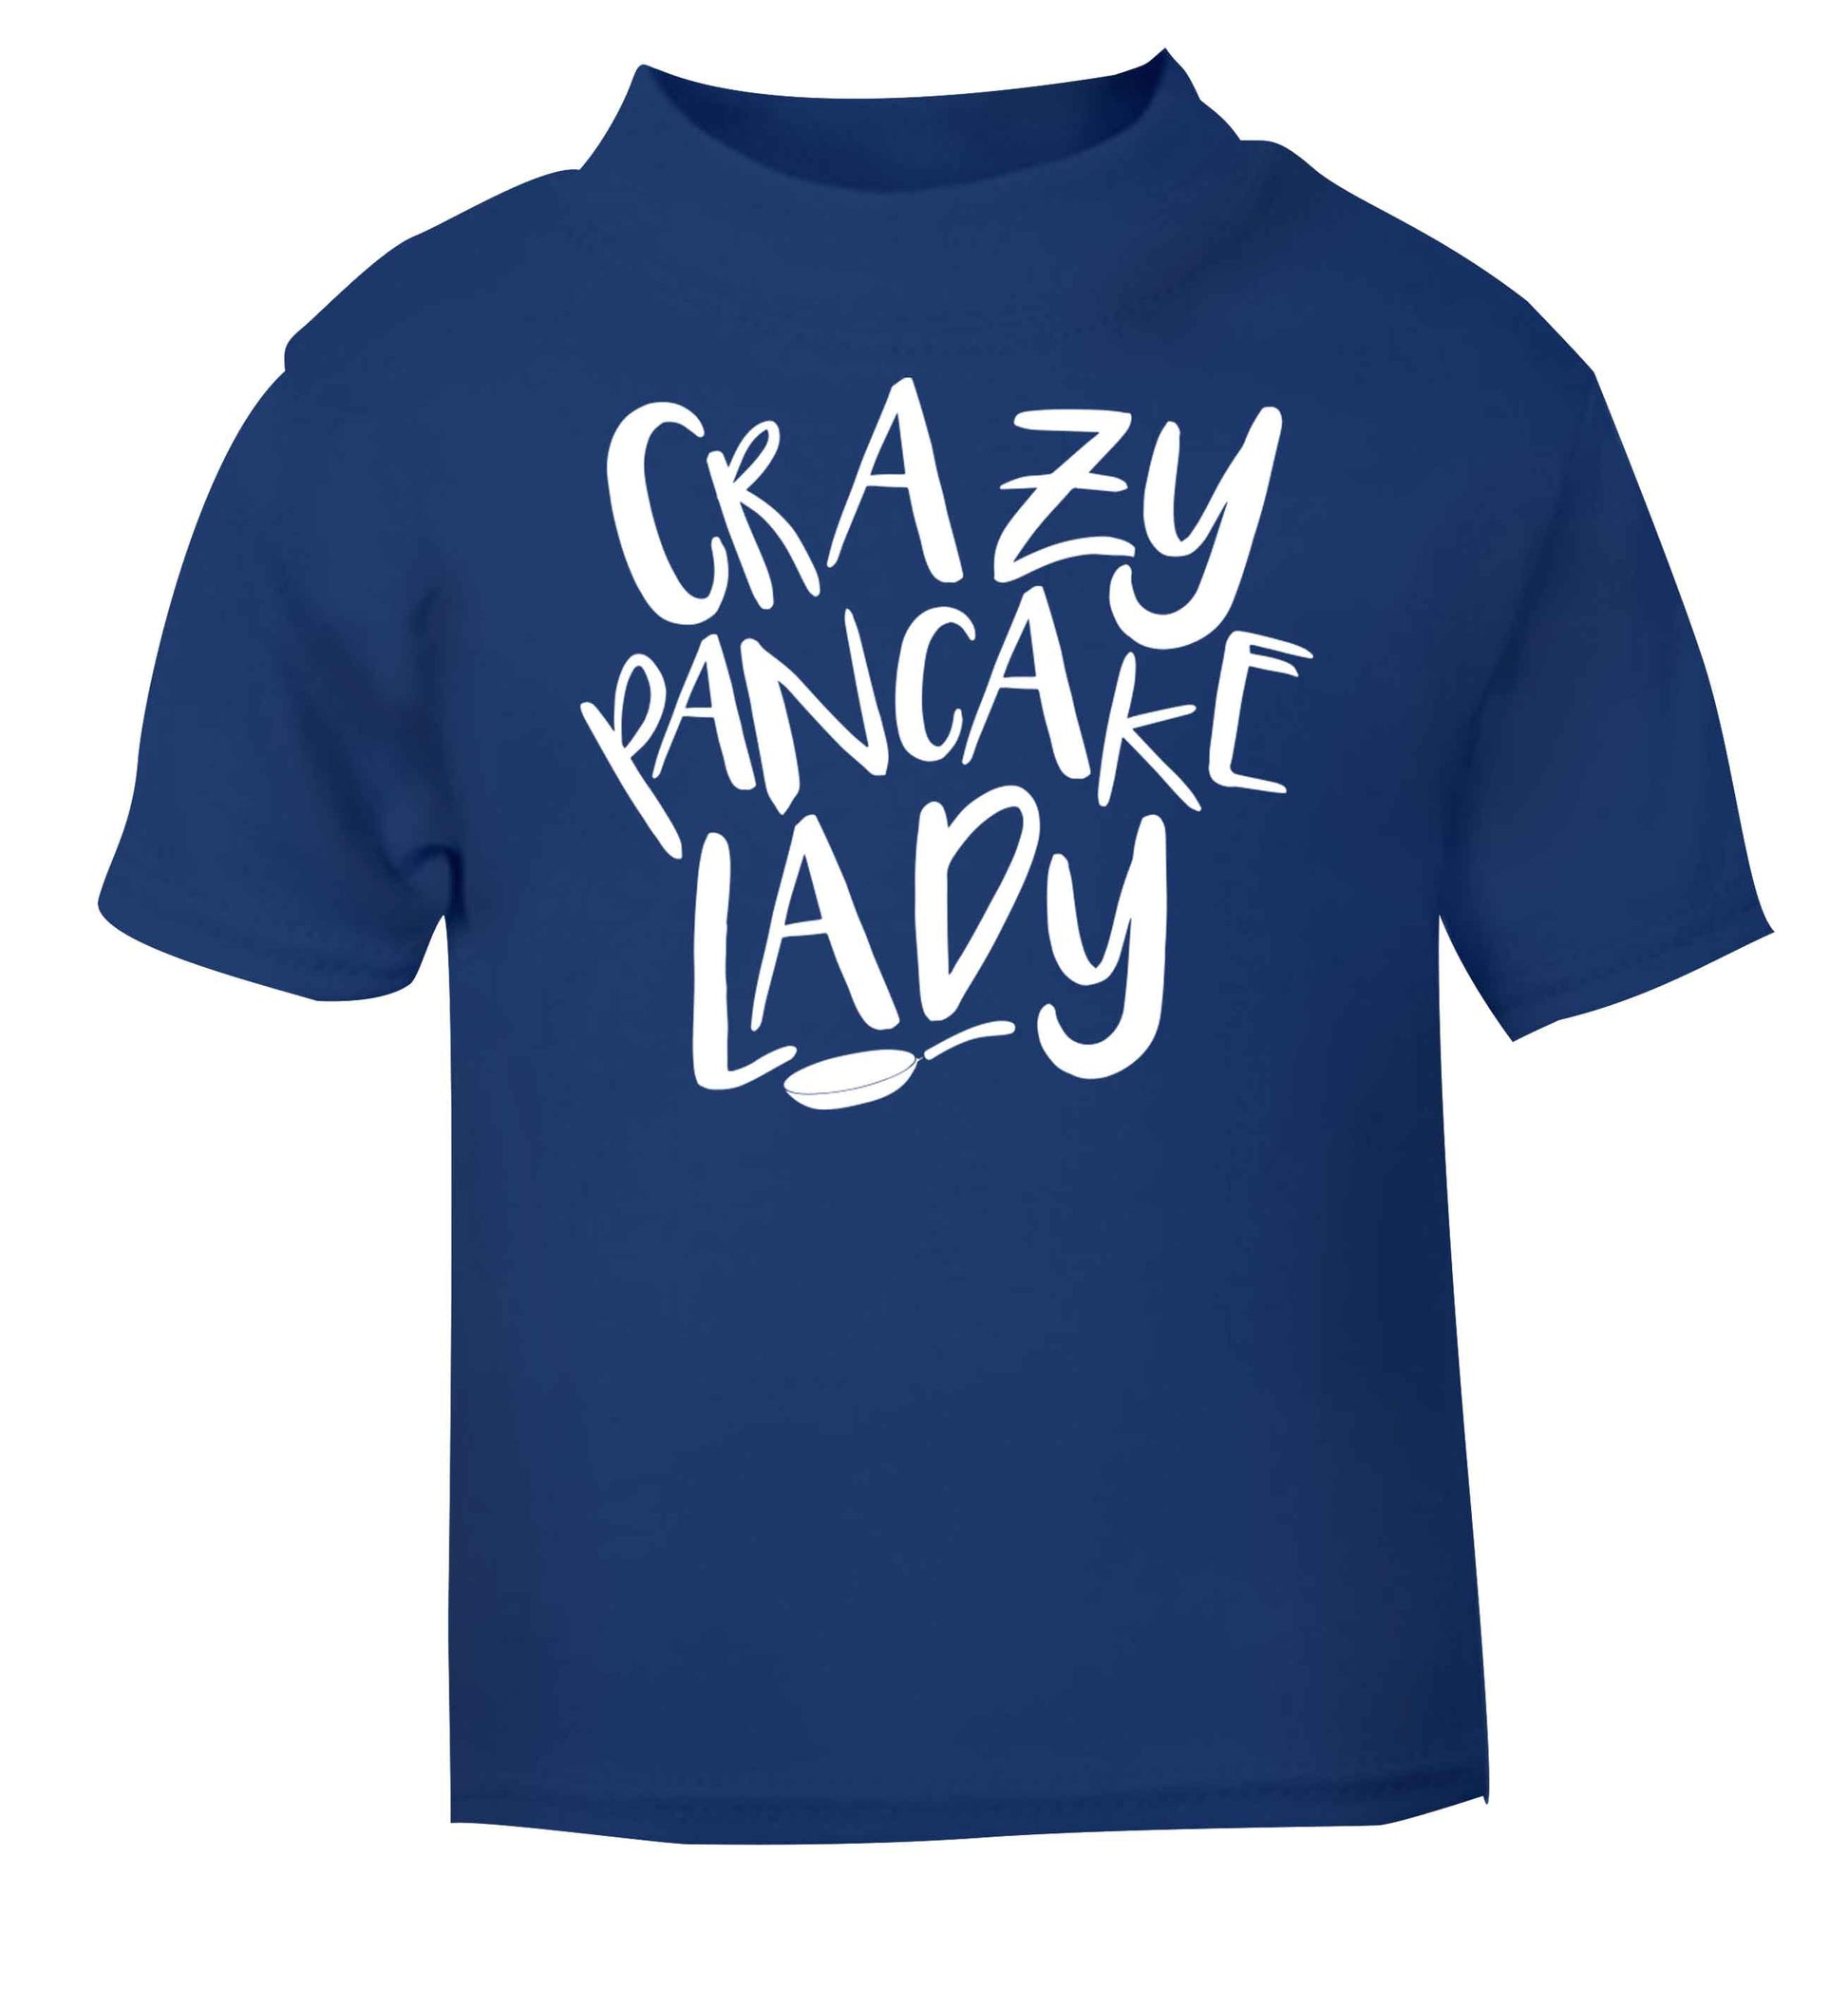 Crazy pancake lady blue baby toddler Tshirt 2 Years